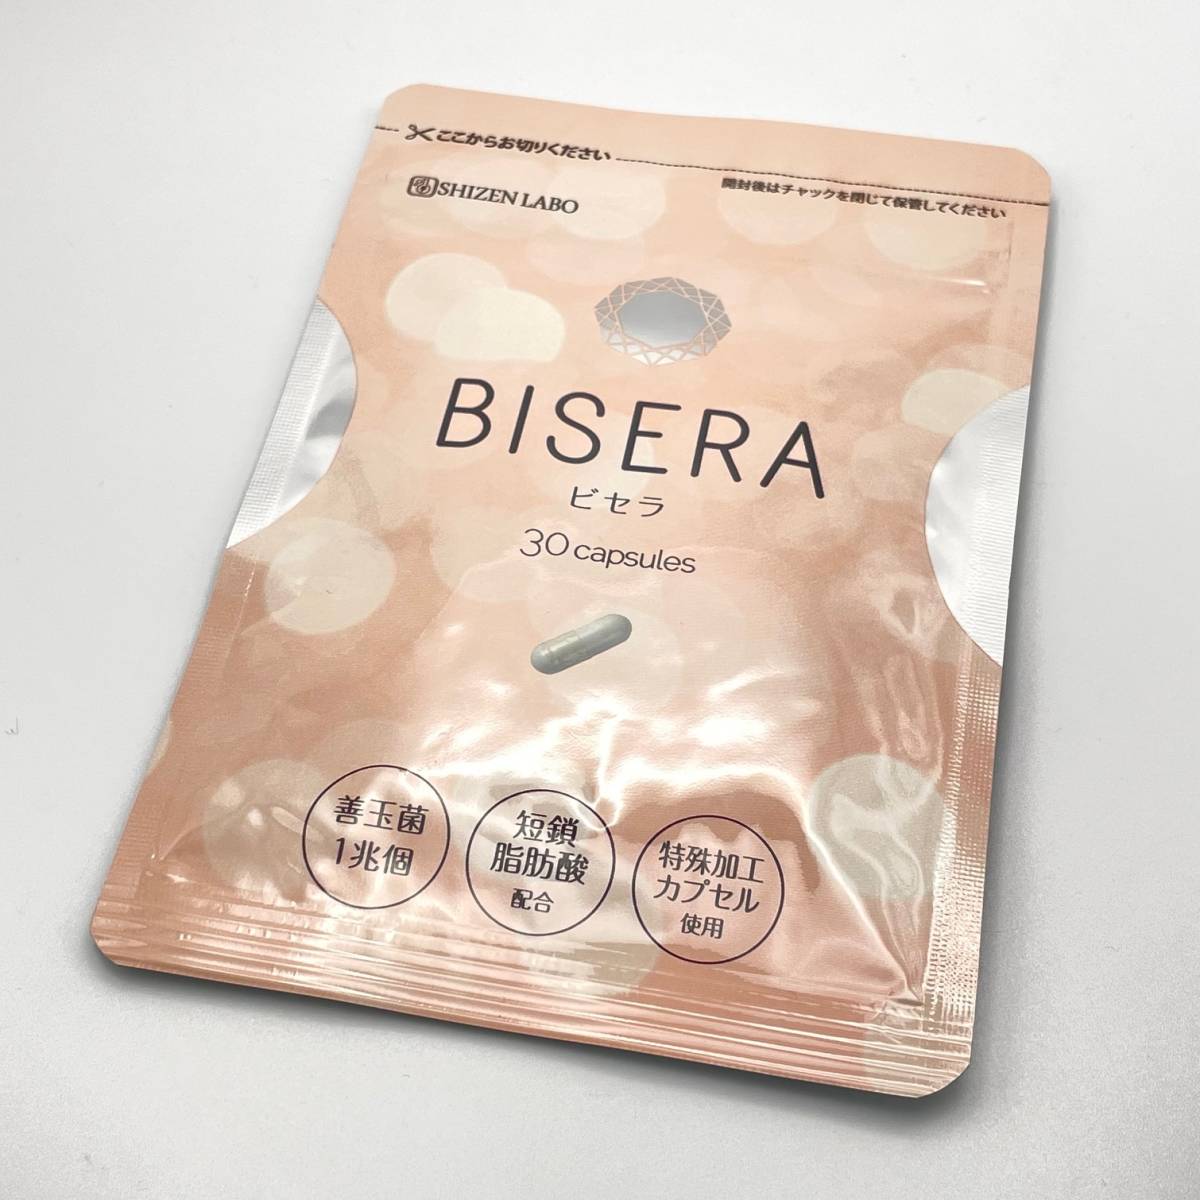 未開封品BISERA 30 capsules ビセラ30粒善玉菌短鎖脂肪酸特殊加工カプセルSHIZEN LABO 自然派研究所|  JChere雅虎拍卖代购